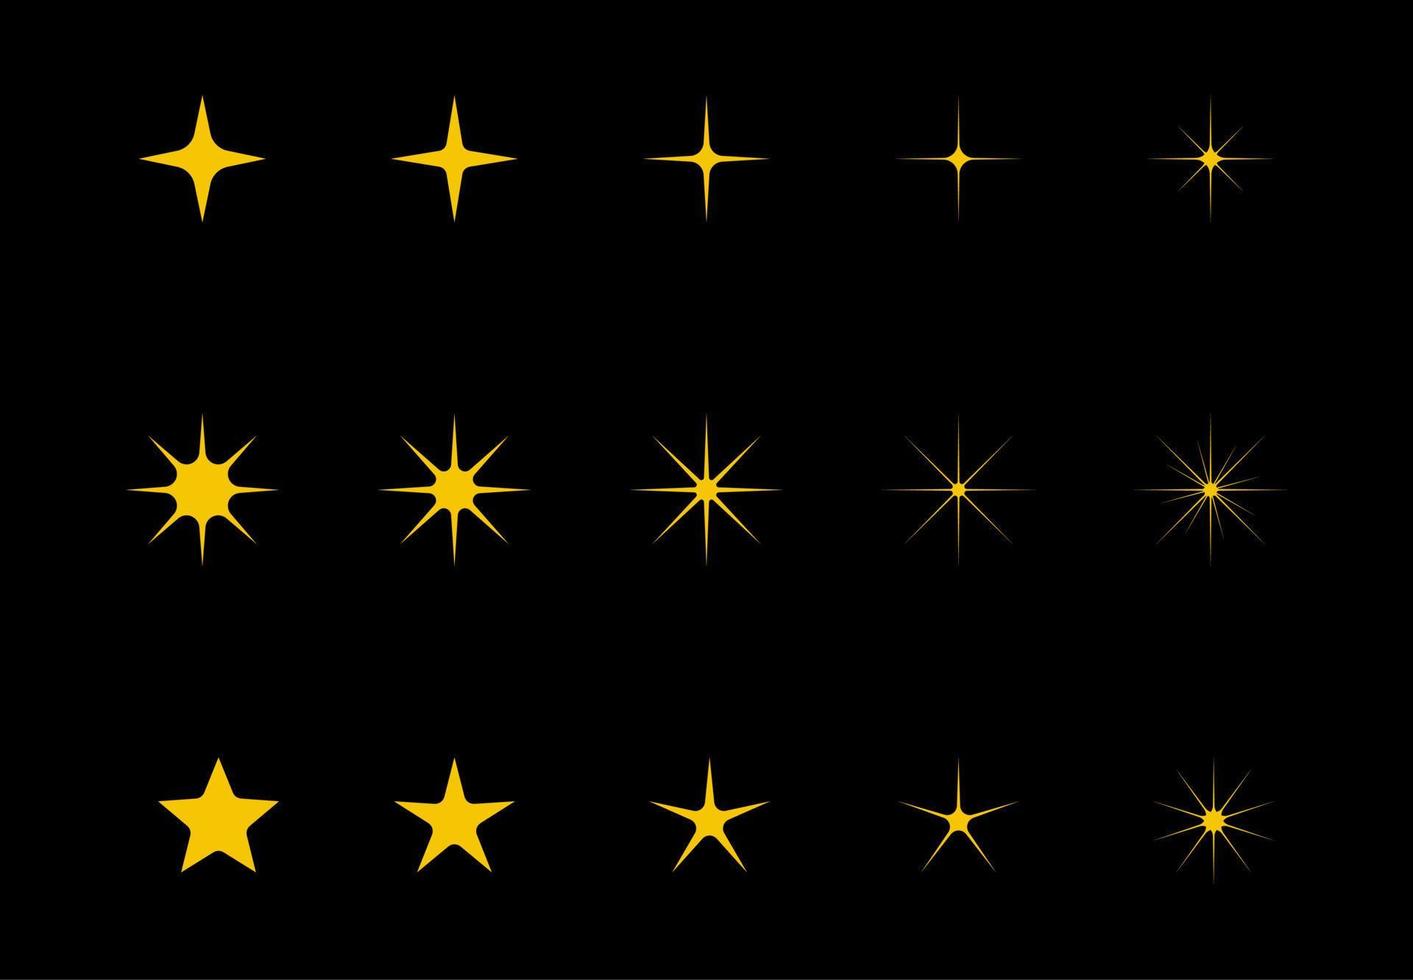 vetor amarelo, ouro, laranja efervescente símbolo isolado no fundo preto. conjunto de ícones de estrelas de brilho do vetor original. fogos de artifício brilhantes, decorações cintilantes, flashes cintilantes. conjunto de vetores